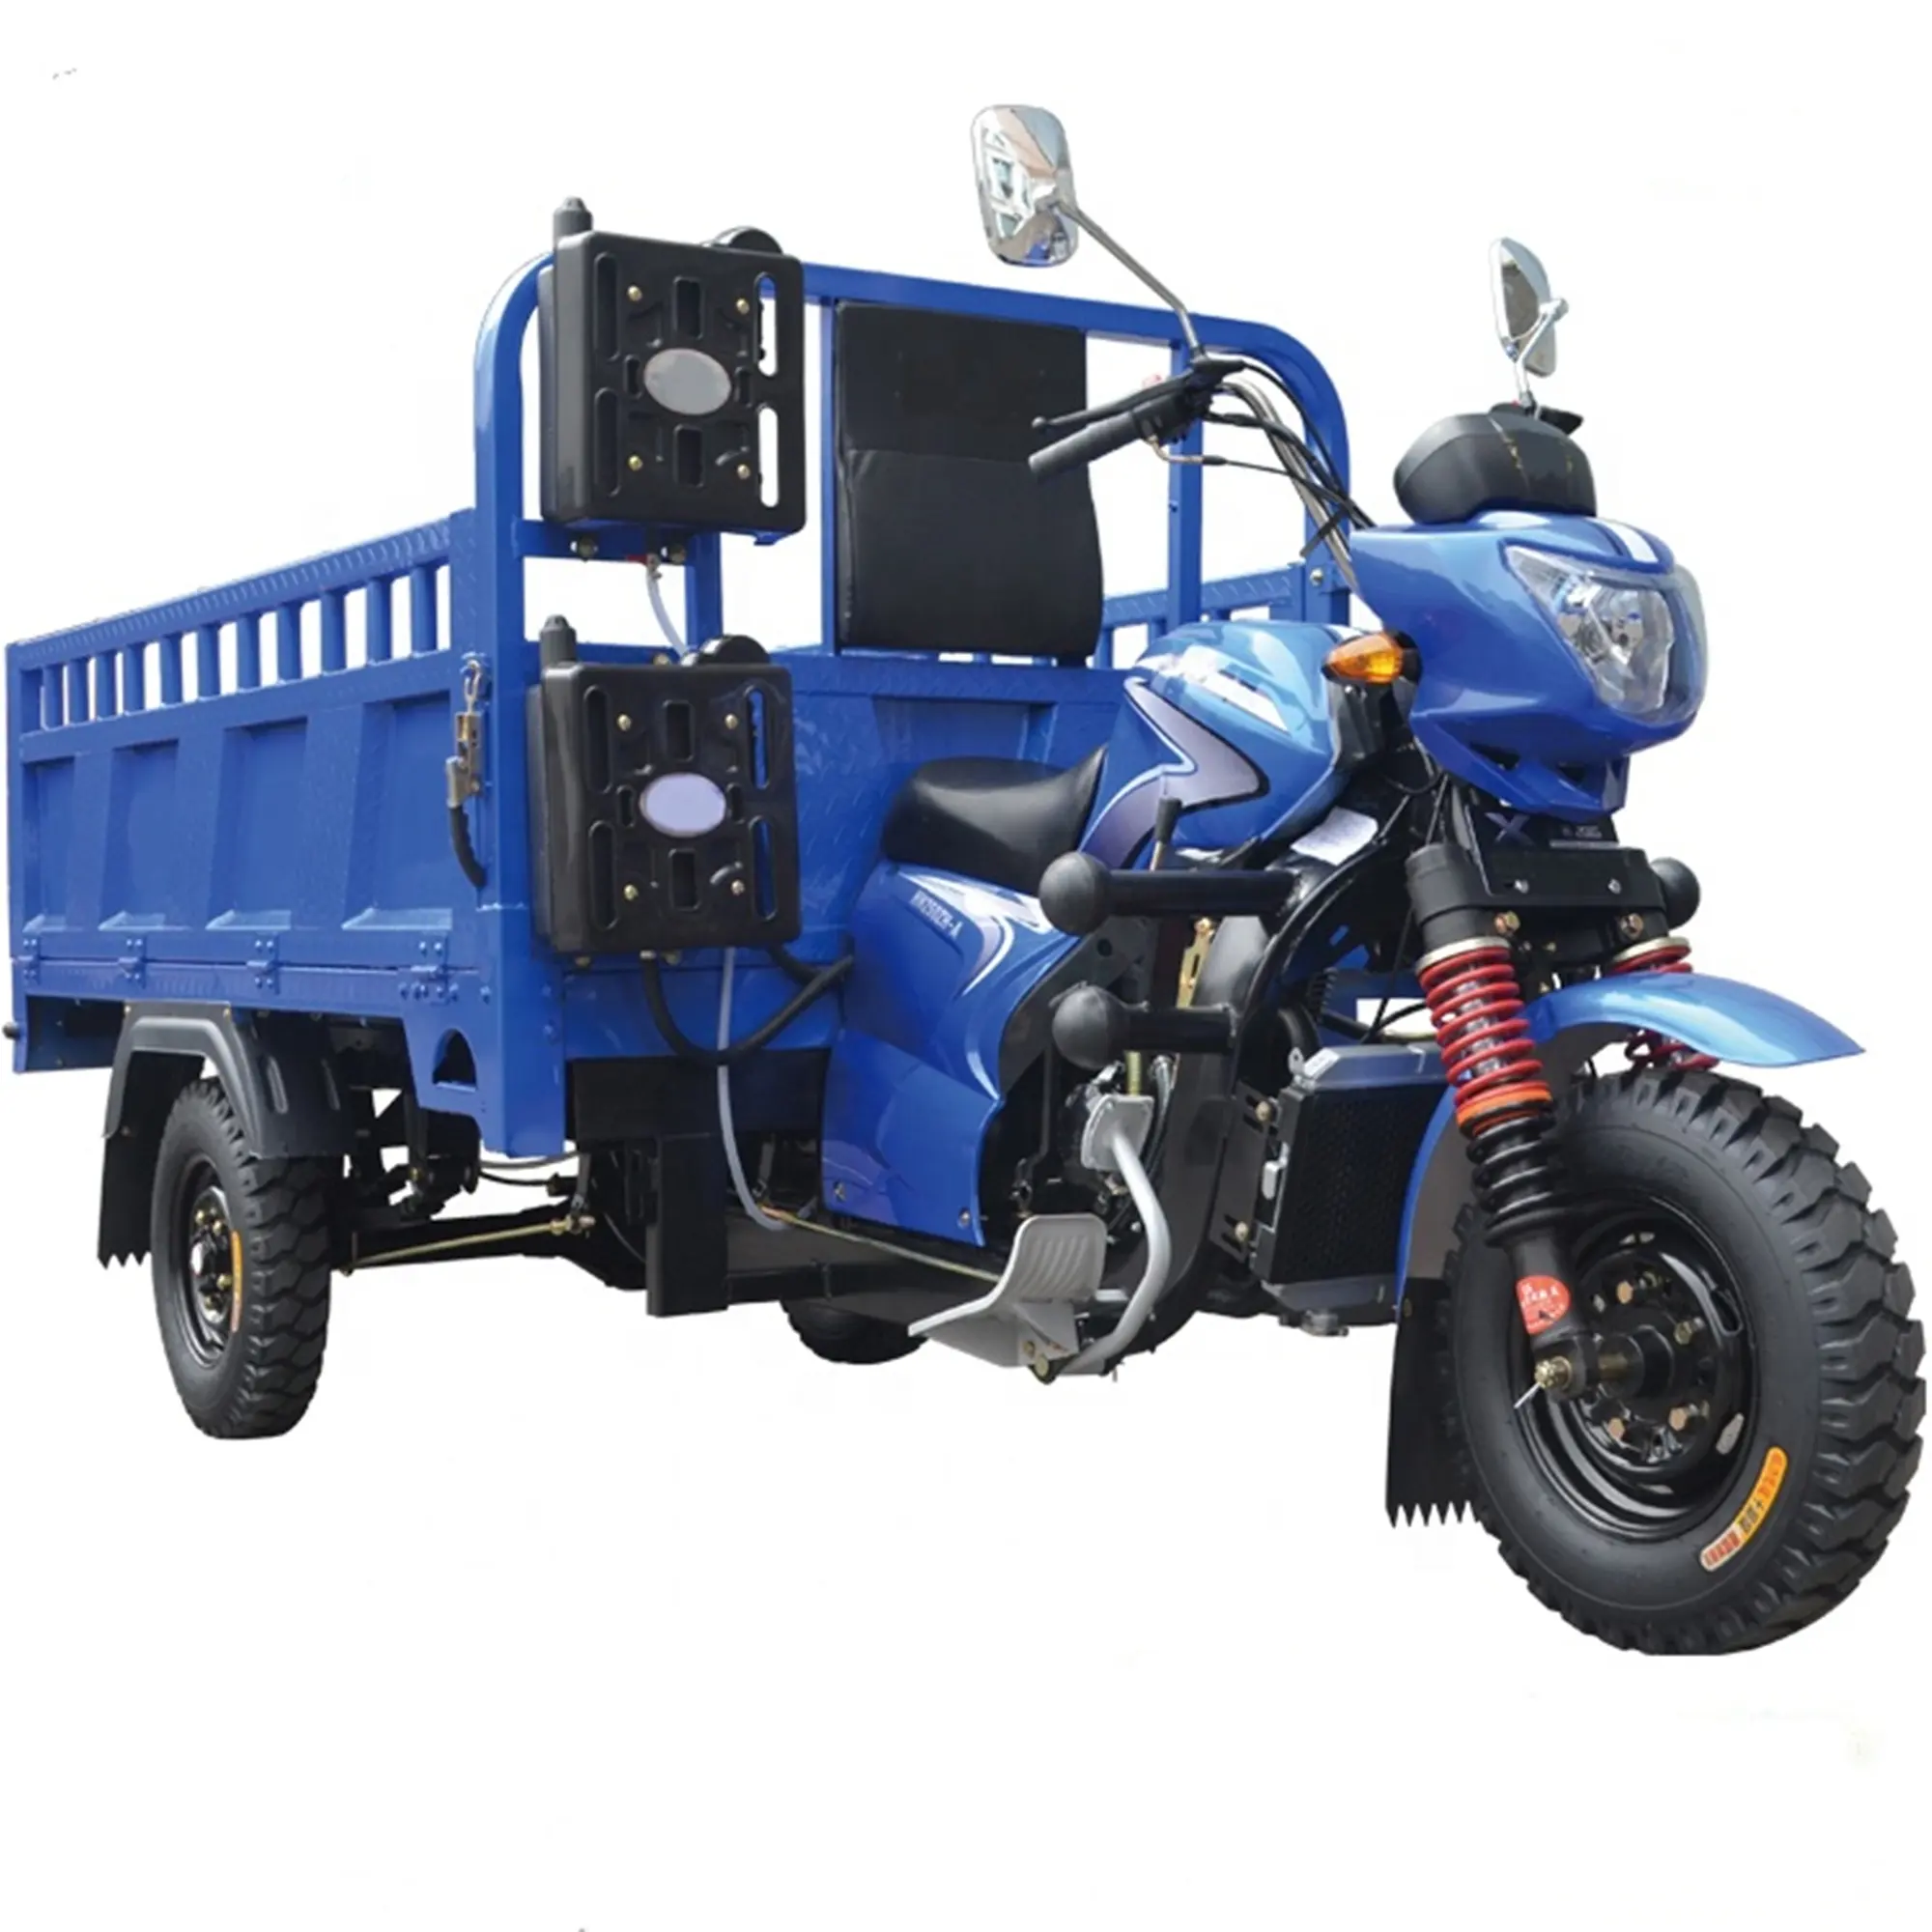 بمحركات يقود 200CC دراجة ثلاثية العجلات الزراعية/استخدام البضائع دراجة ثلاثية العجلات